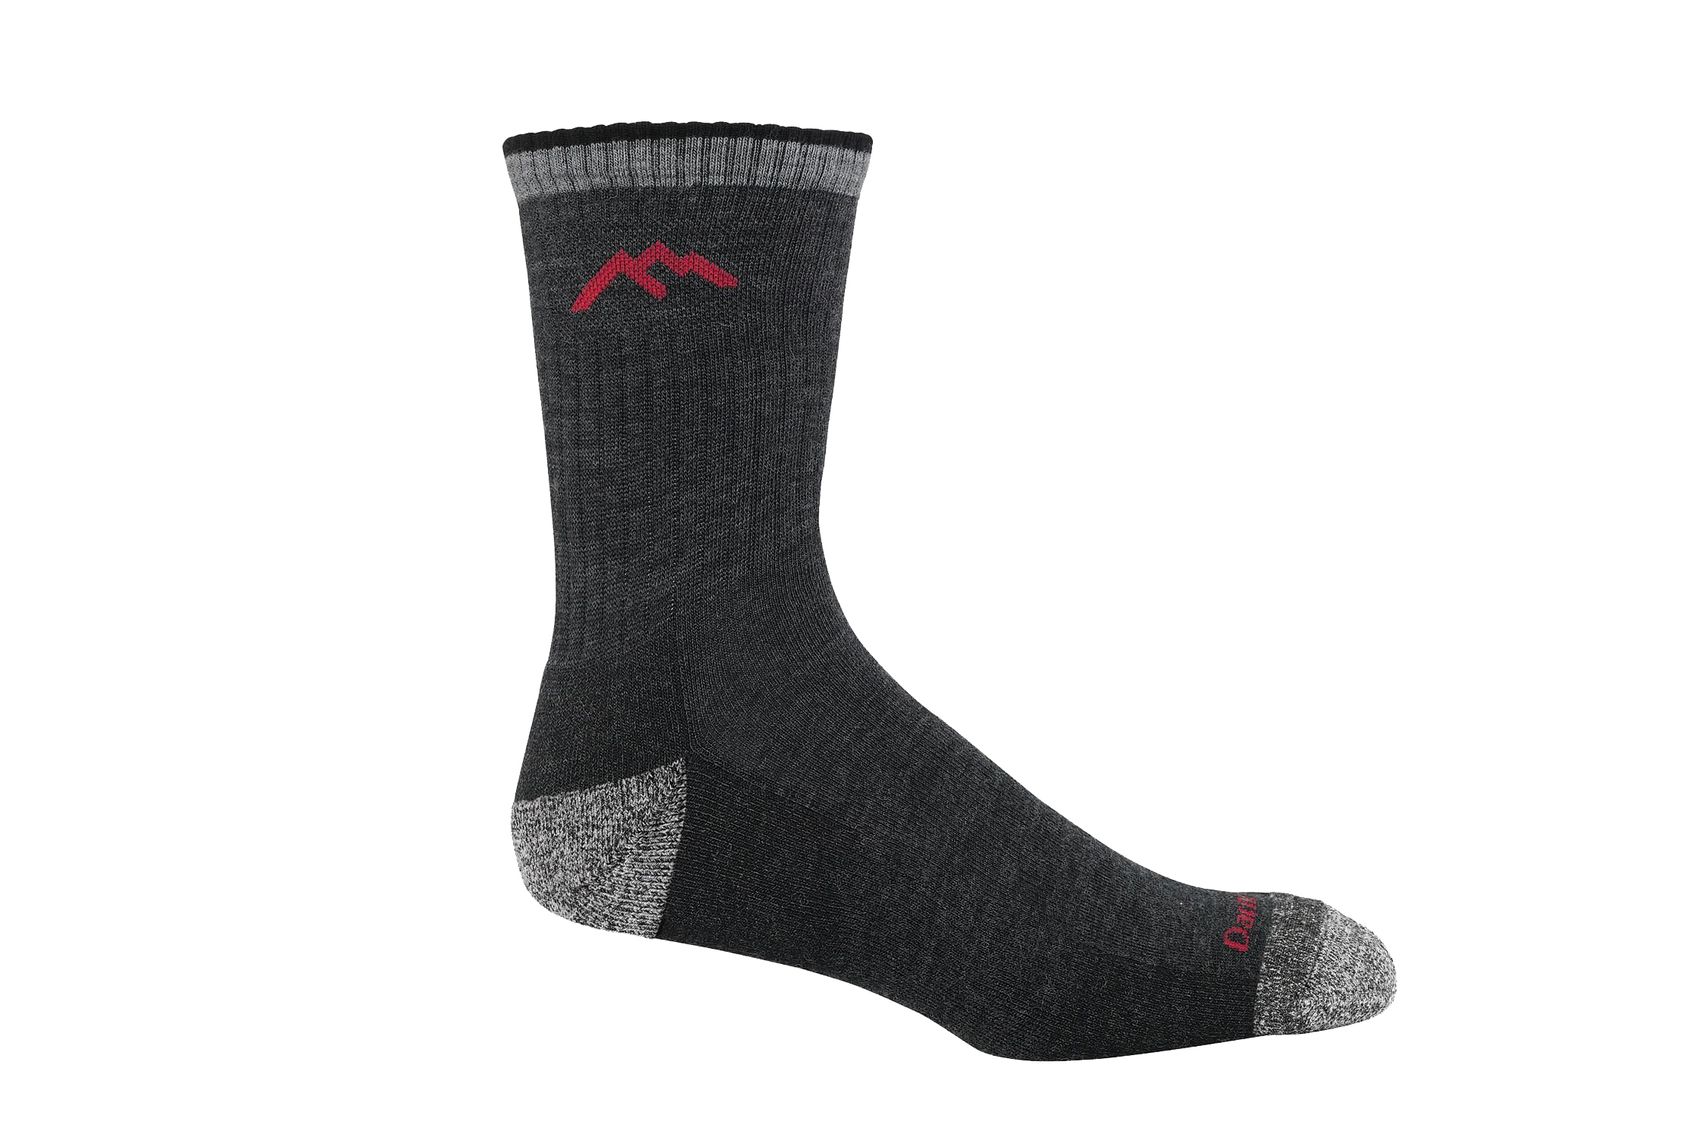 The Best Running Socks Are Feetures Merino Wool Socks